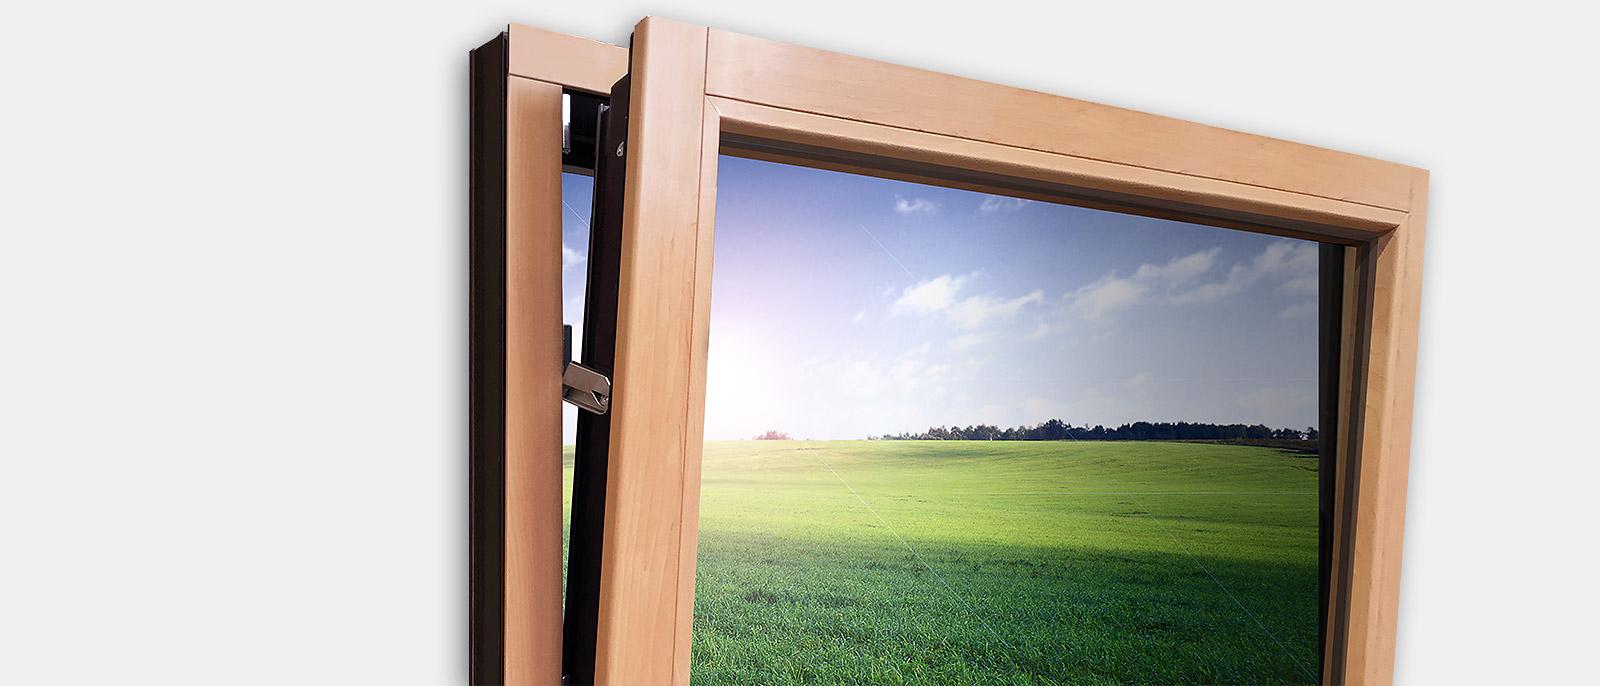 Einbruchschutz bei gekipptem Fenster, GAYKOSafeGA®5000 SL – RC2 geprüft und zertifiziert nach DIN EN 1627 ff.